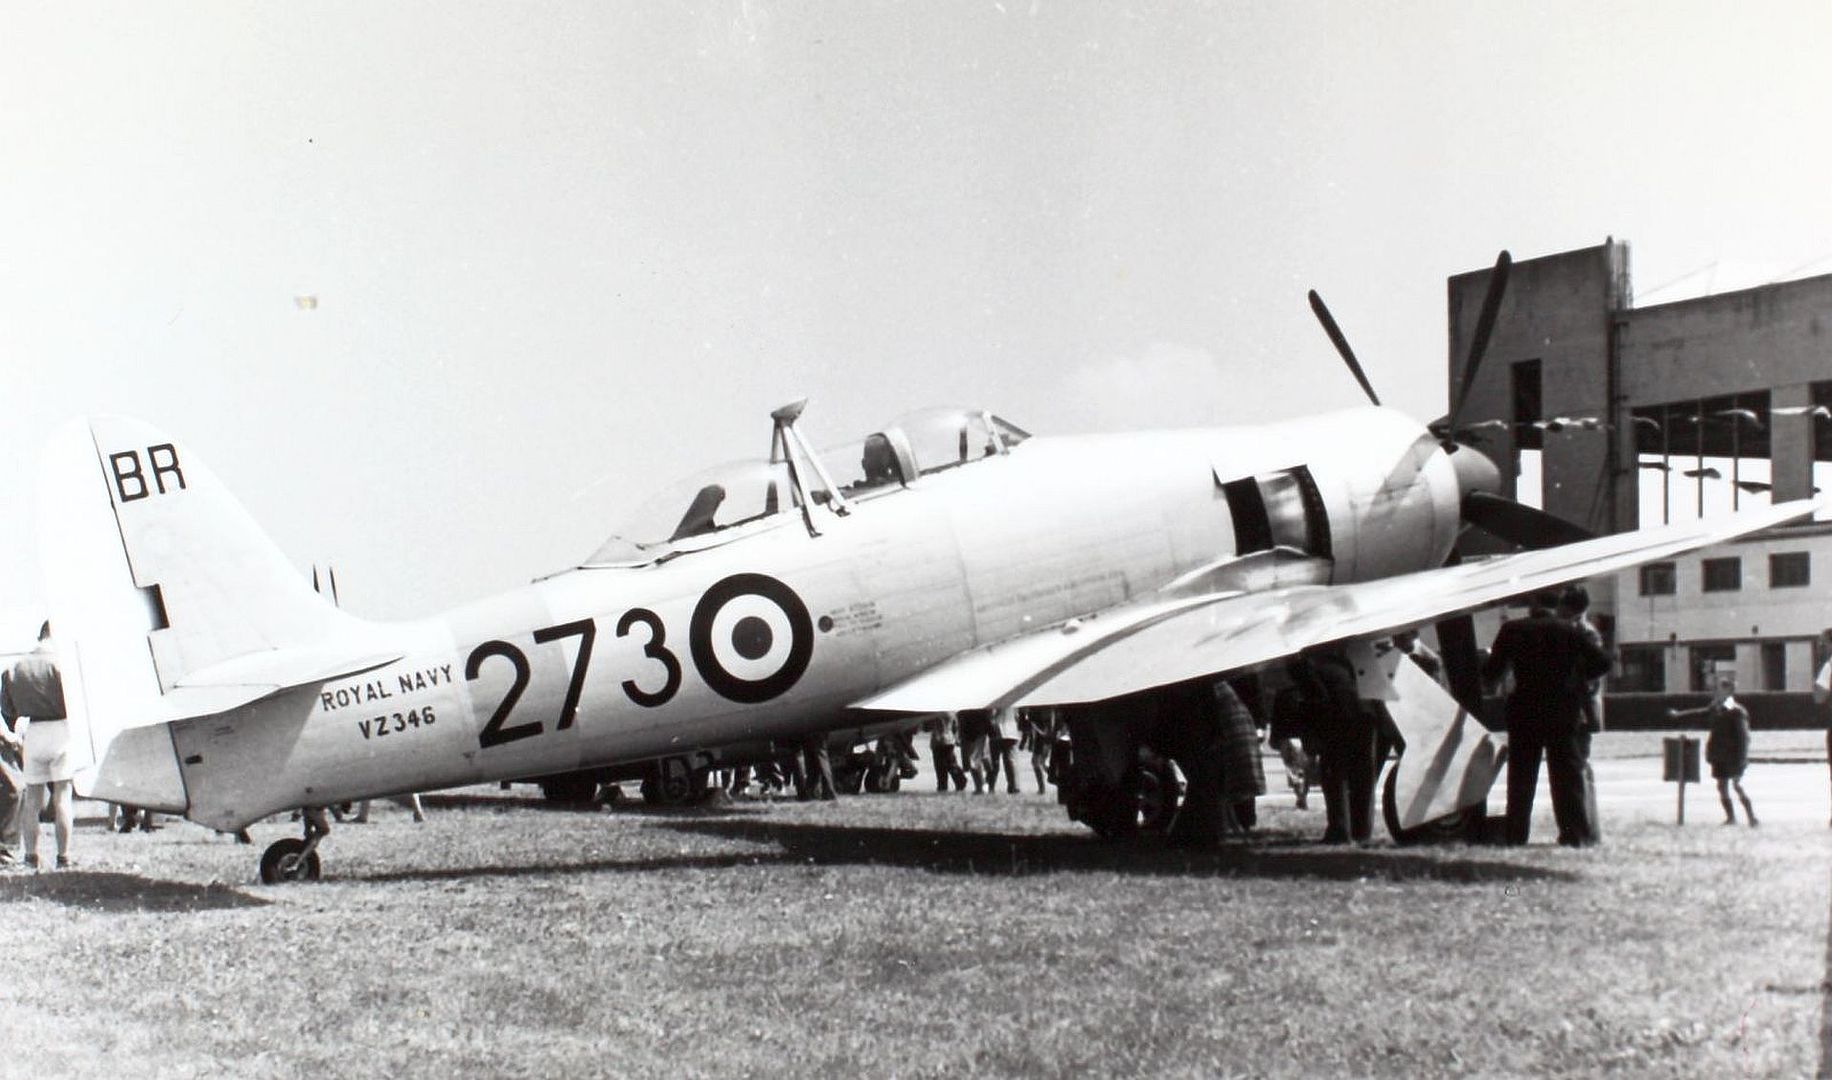 Hawker Sea Fury T Mk 20S